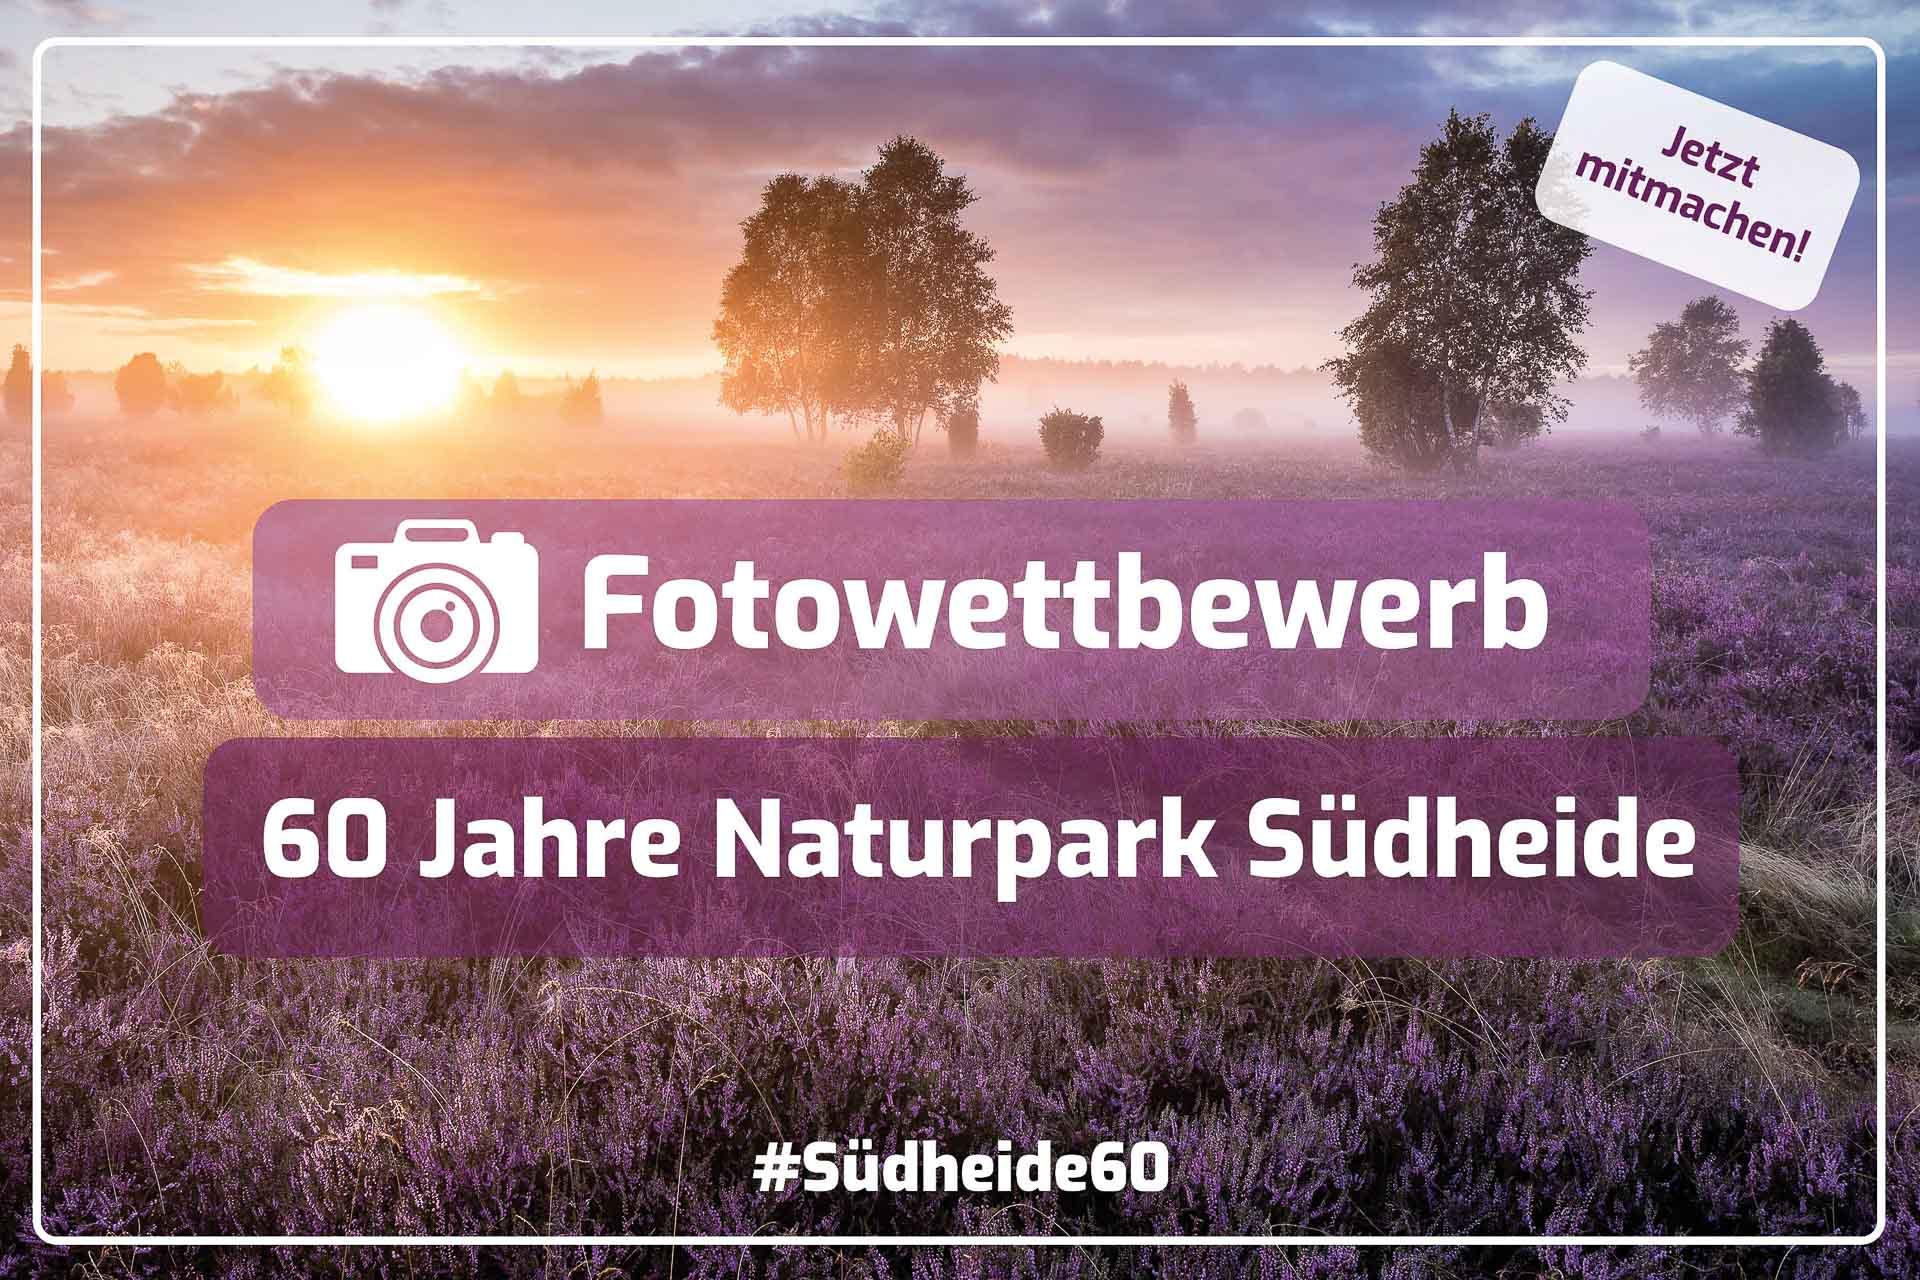 Fotowettbewerb „60 Jahre Naturpark Südheide“ - Teilnahmebedingungen